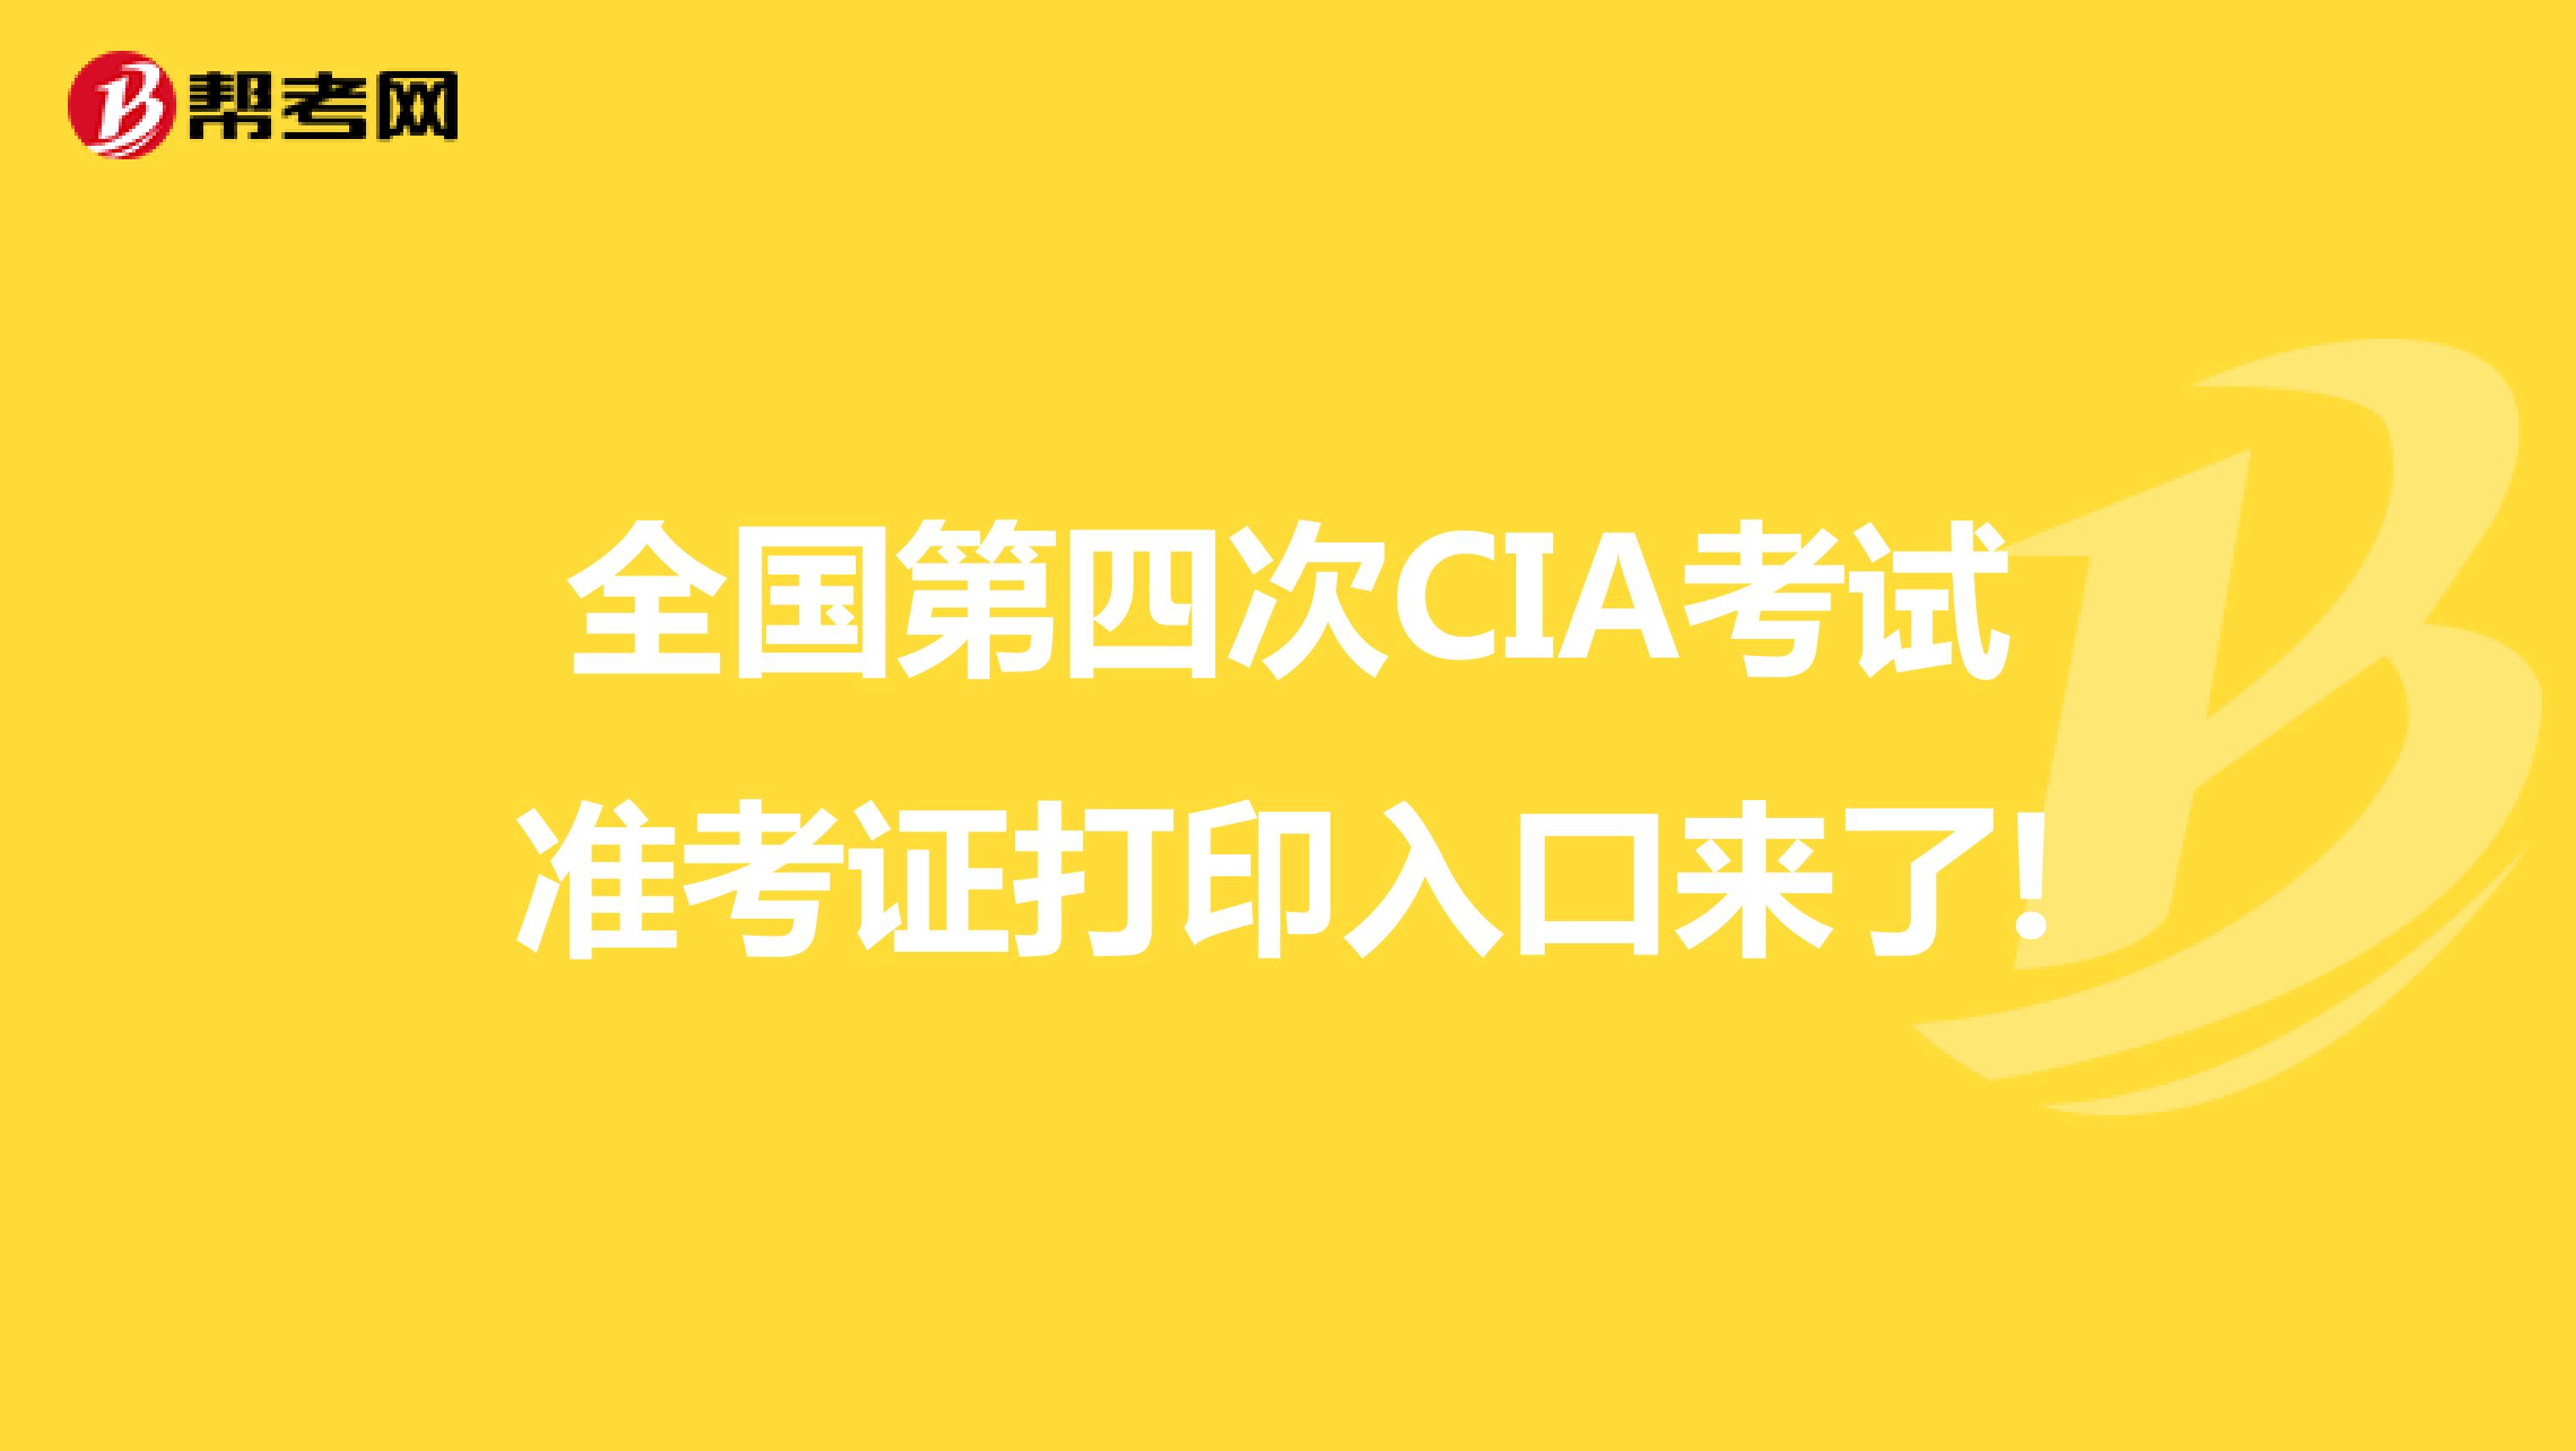 全国第四次CIA考试准考证打印入口来了!